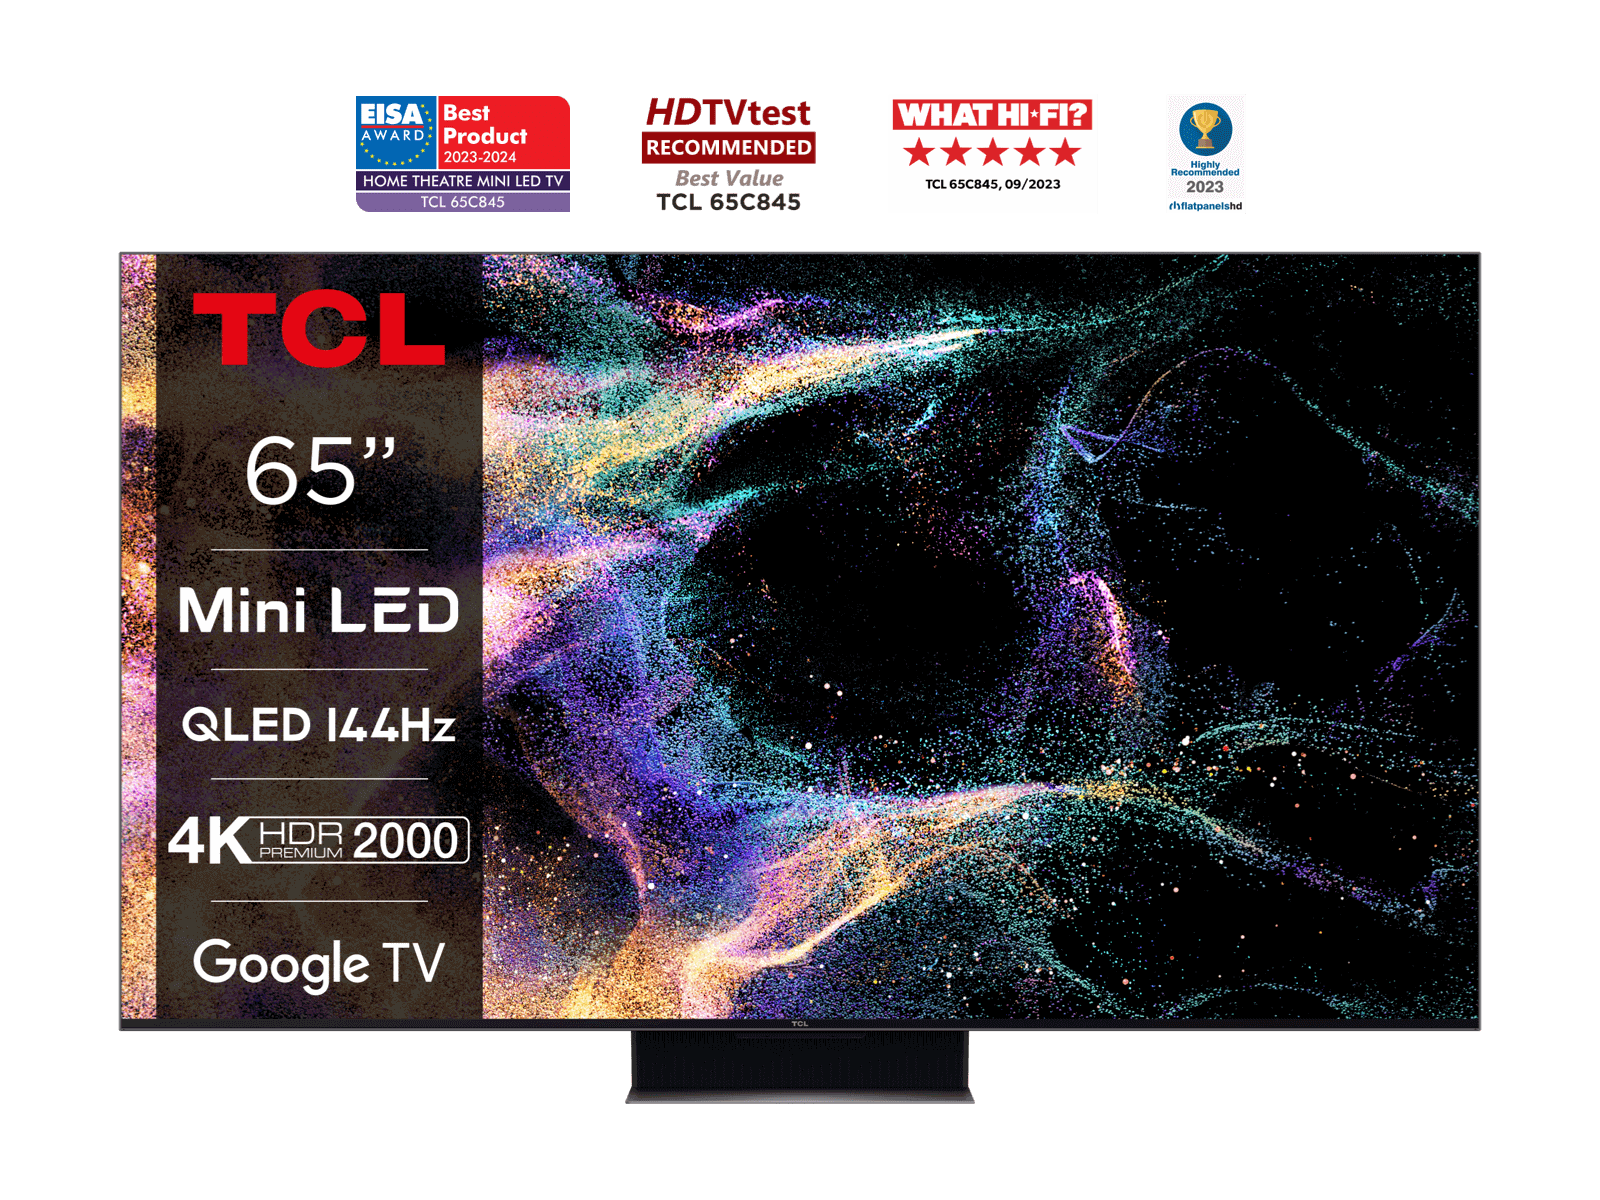 TCL TV/85C845/MINI-LED/GOOGLE